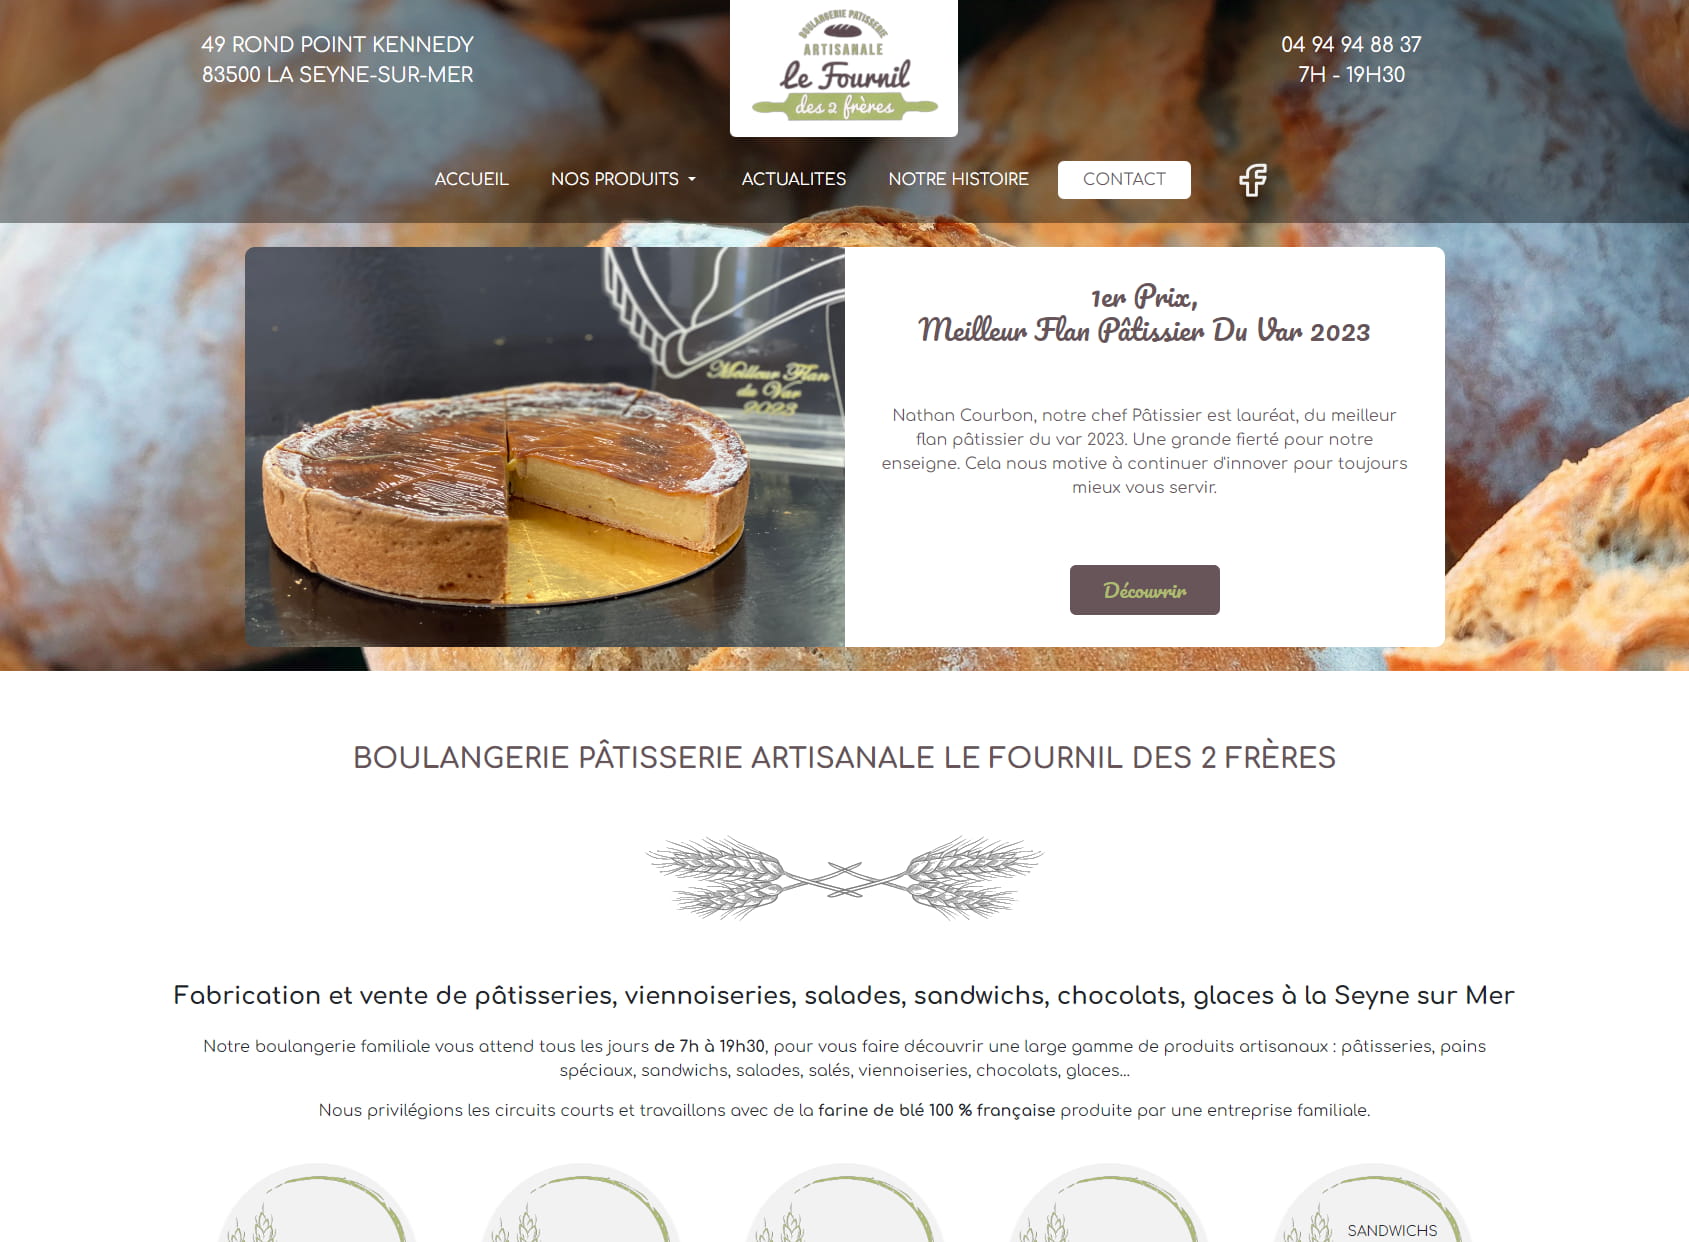 Boulangerie Le Fournil des 2 Freres